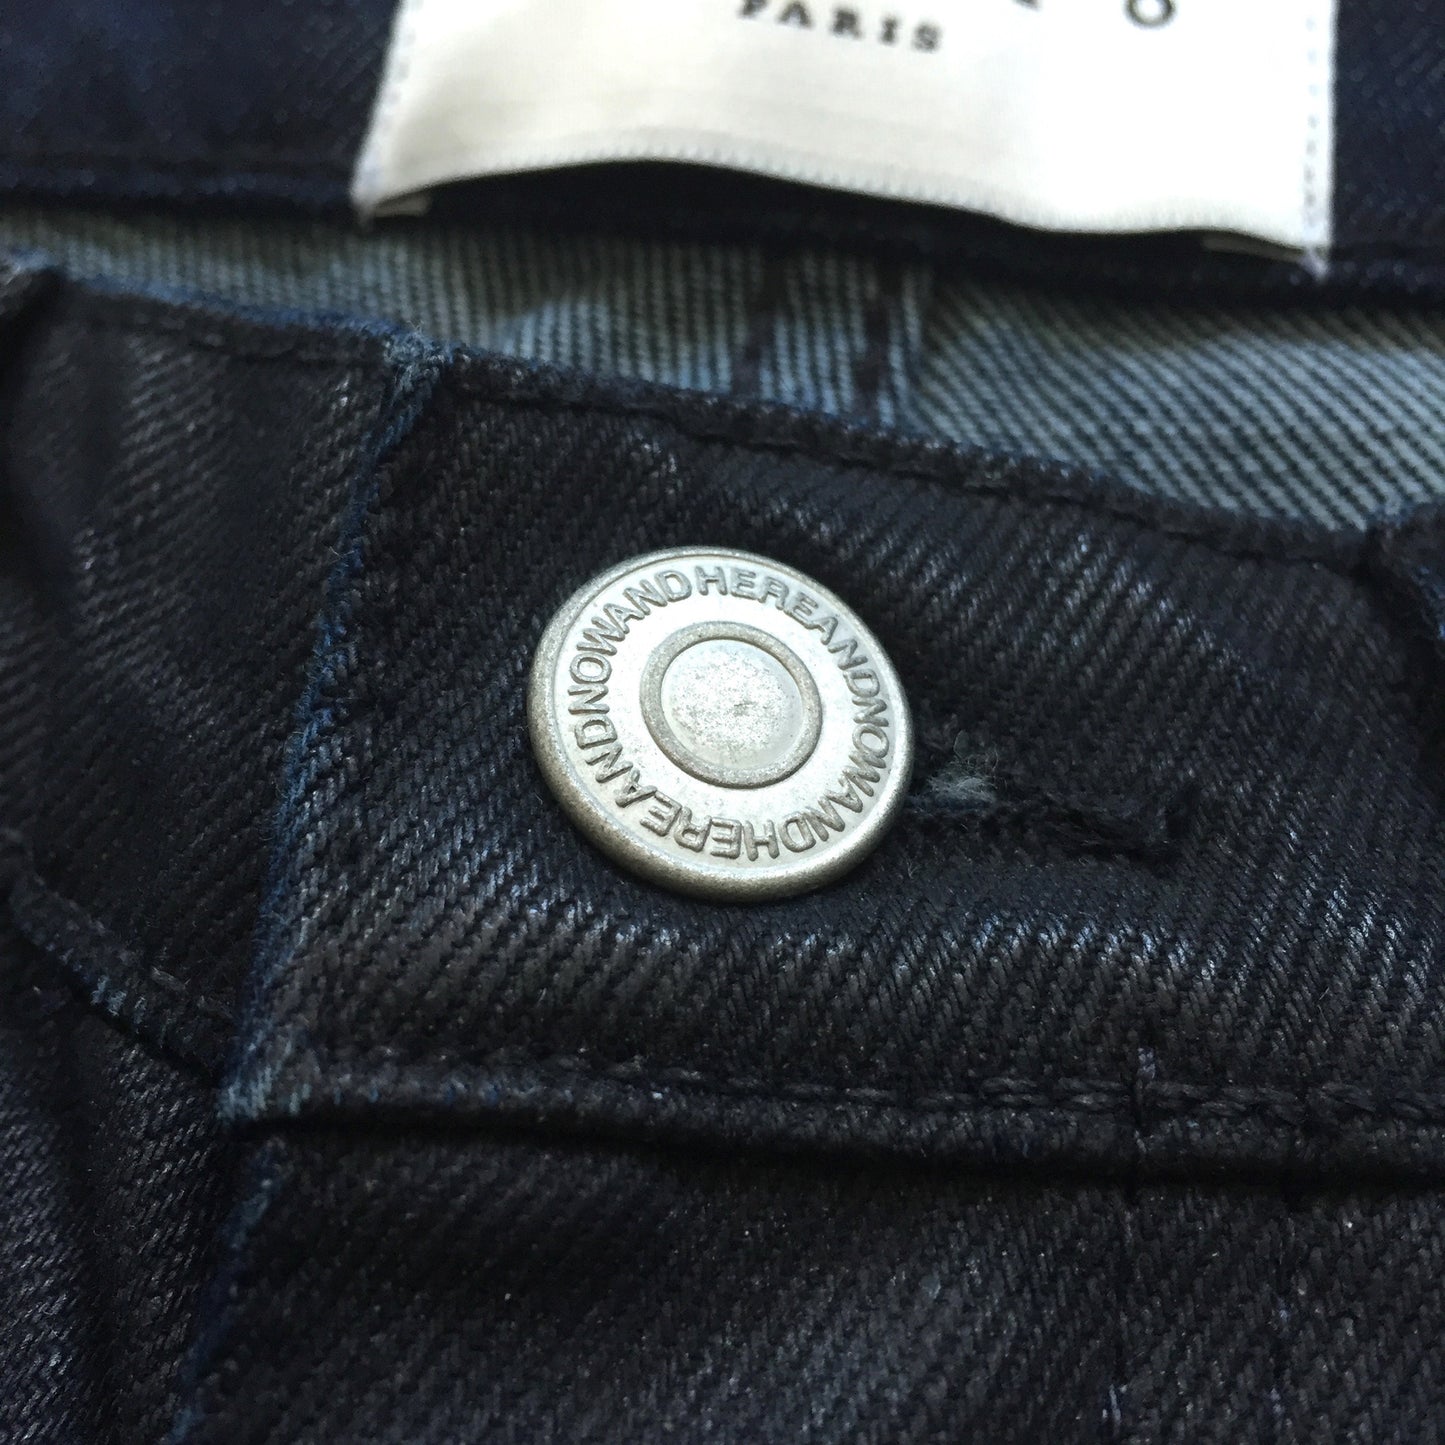 Sandro - Coated Blue Denim Jeans